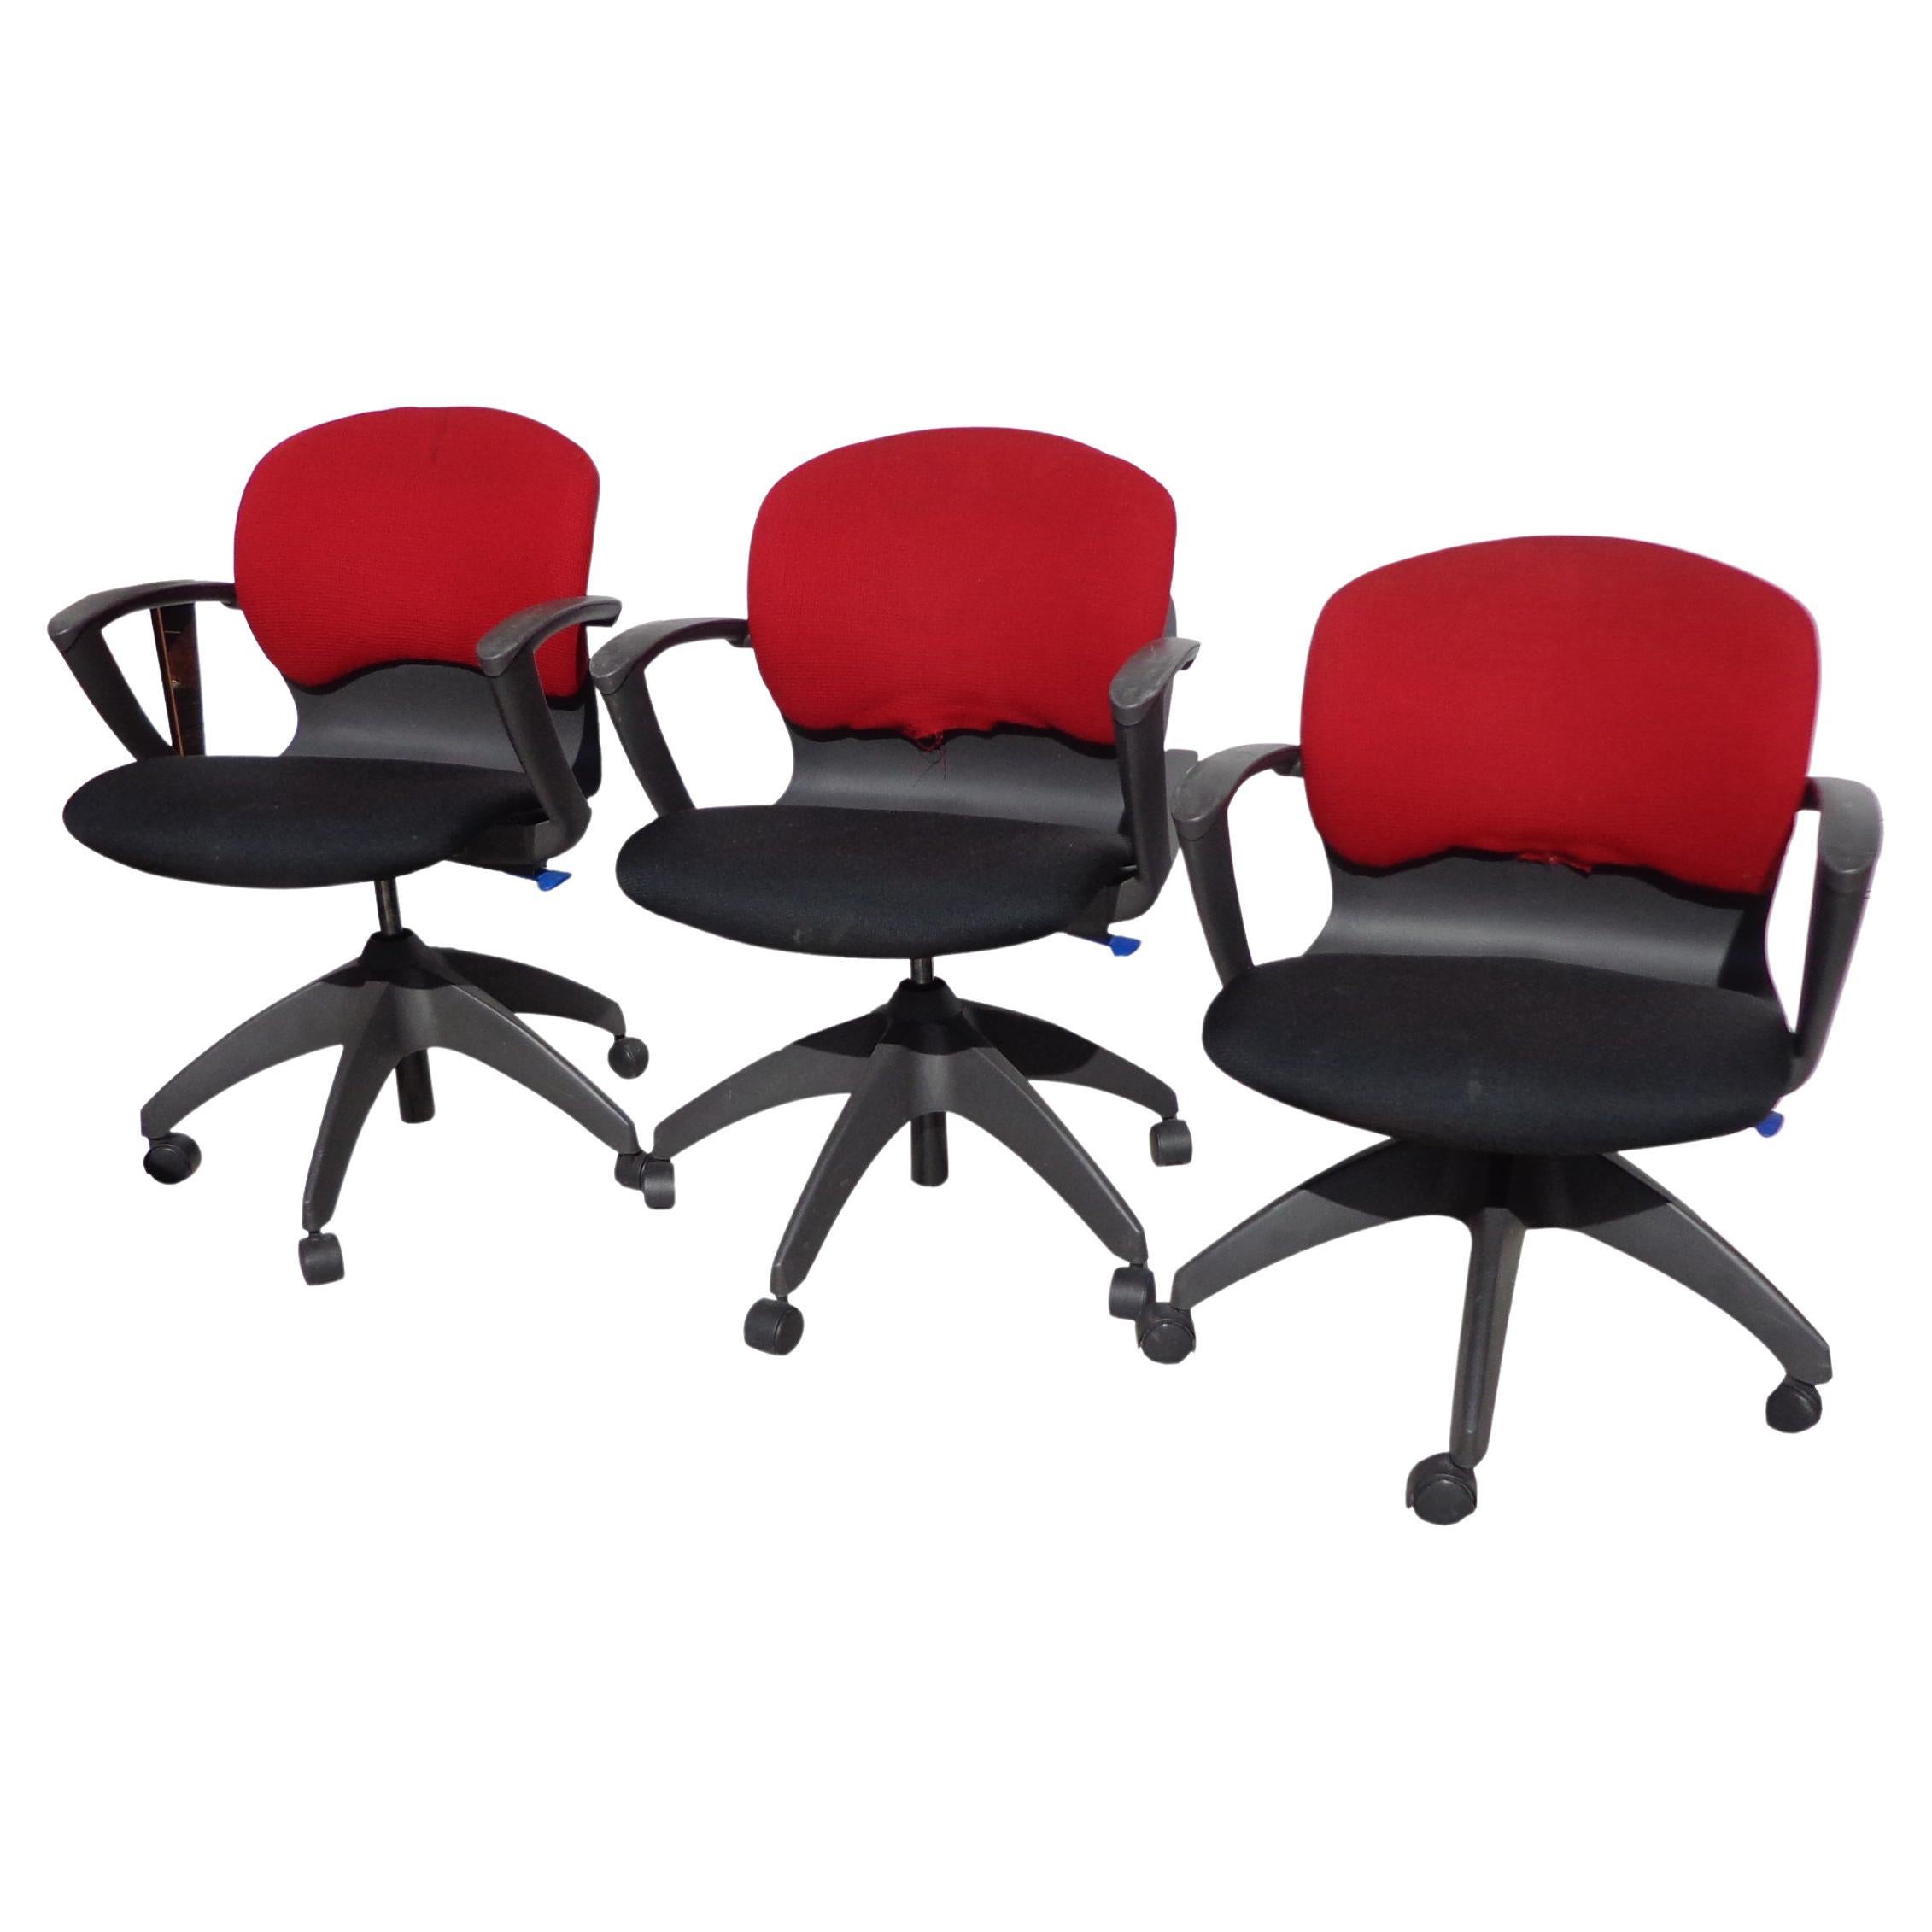 1 SOHO Task chair von Roberto Lucci & Paolo Orlandini für Knoll

Dieser preisgekrönte Stuhl mit ergonomischem Design aus dem Jahr 1994 verfügt über einen breiten Sitz, der für zusätzlichen Komfort nach vorne gleitet.
Preis für 1
3 verfügbar.
 